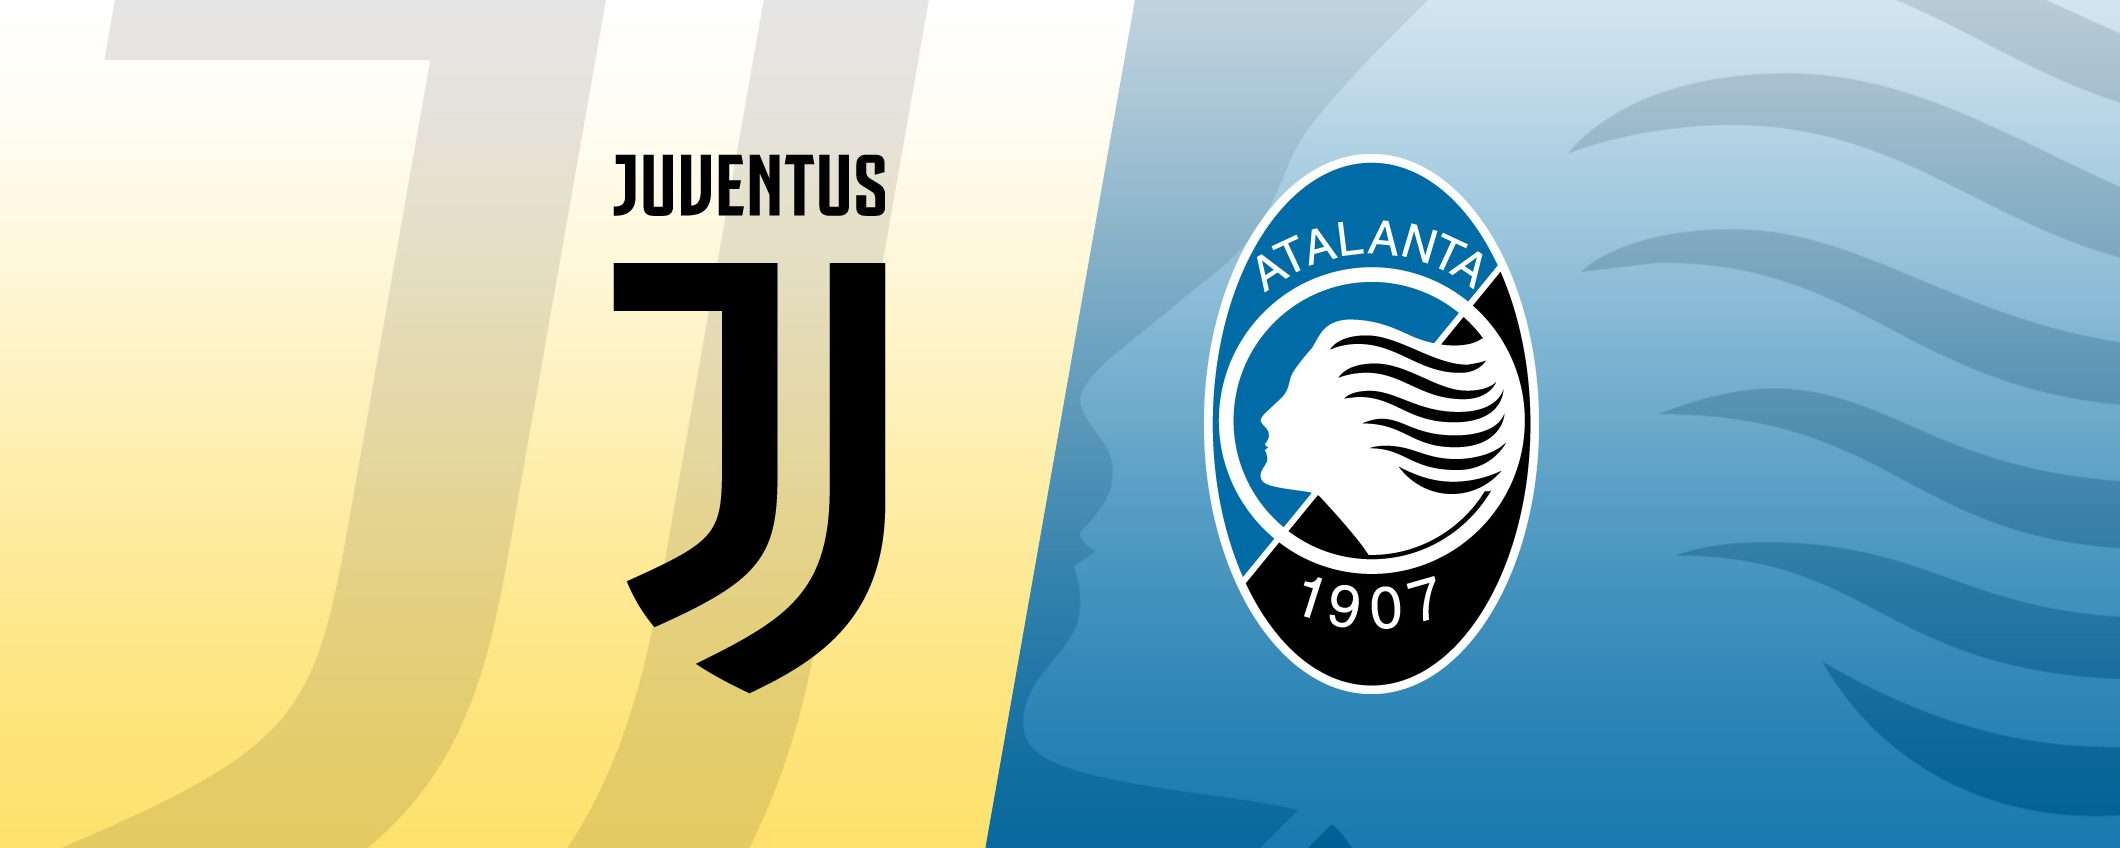 Juventus-Atalanta come vedere la partita in diretta streaming